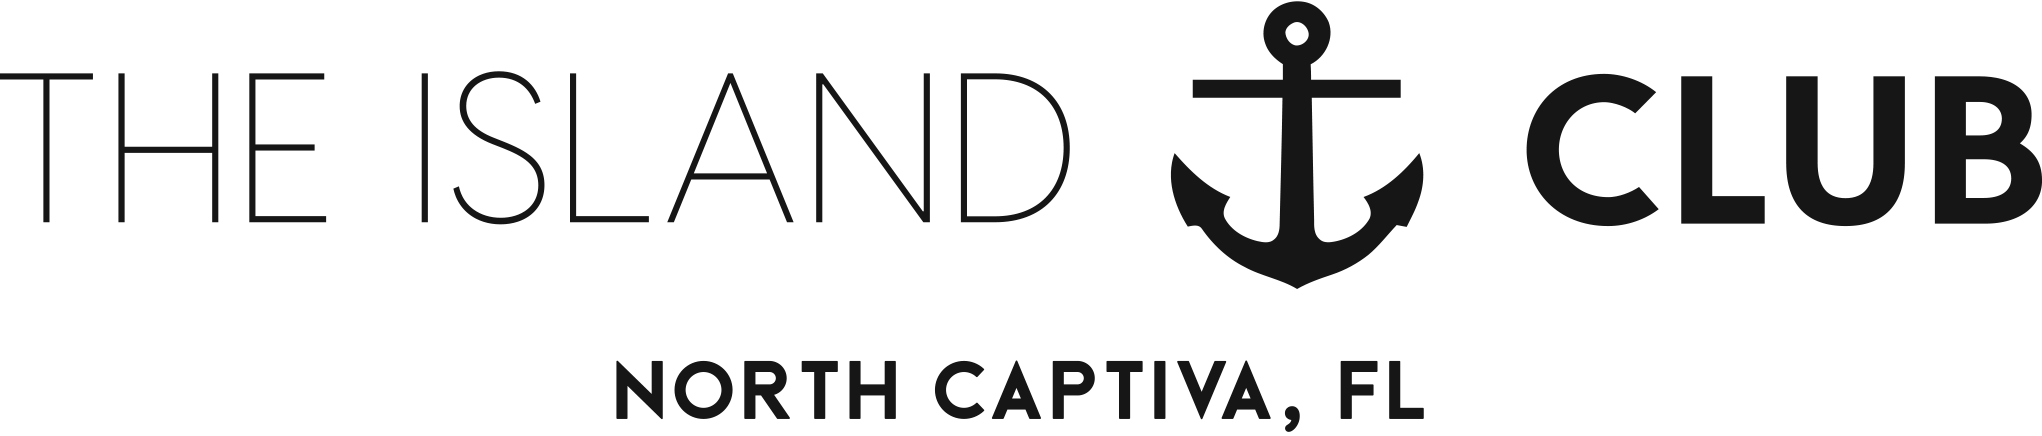 a horizontal logo with anchor